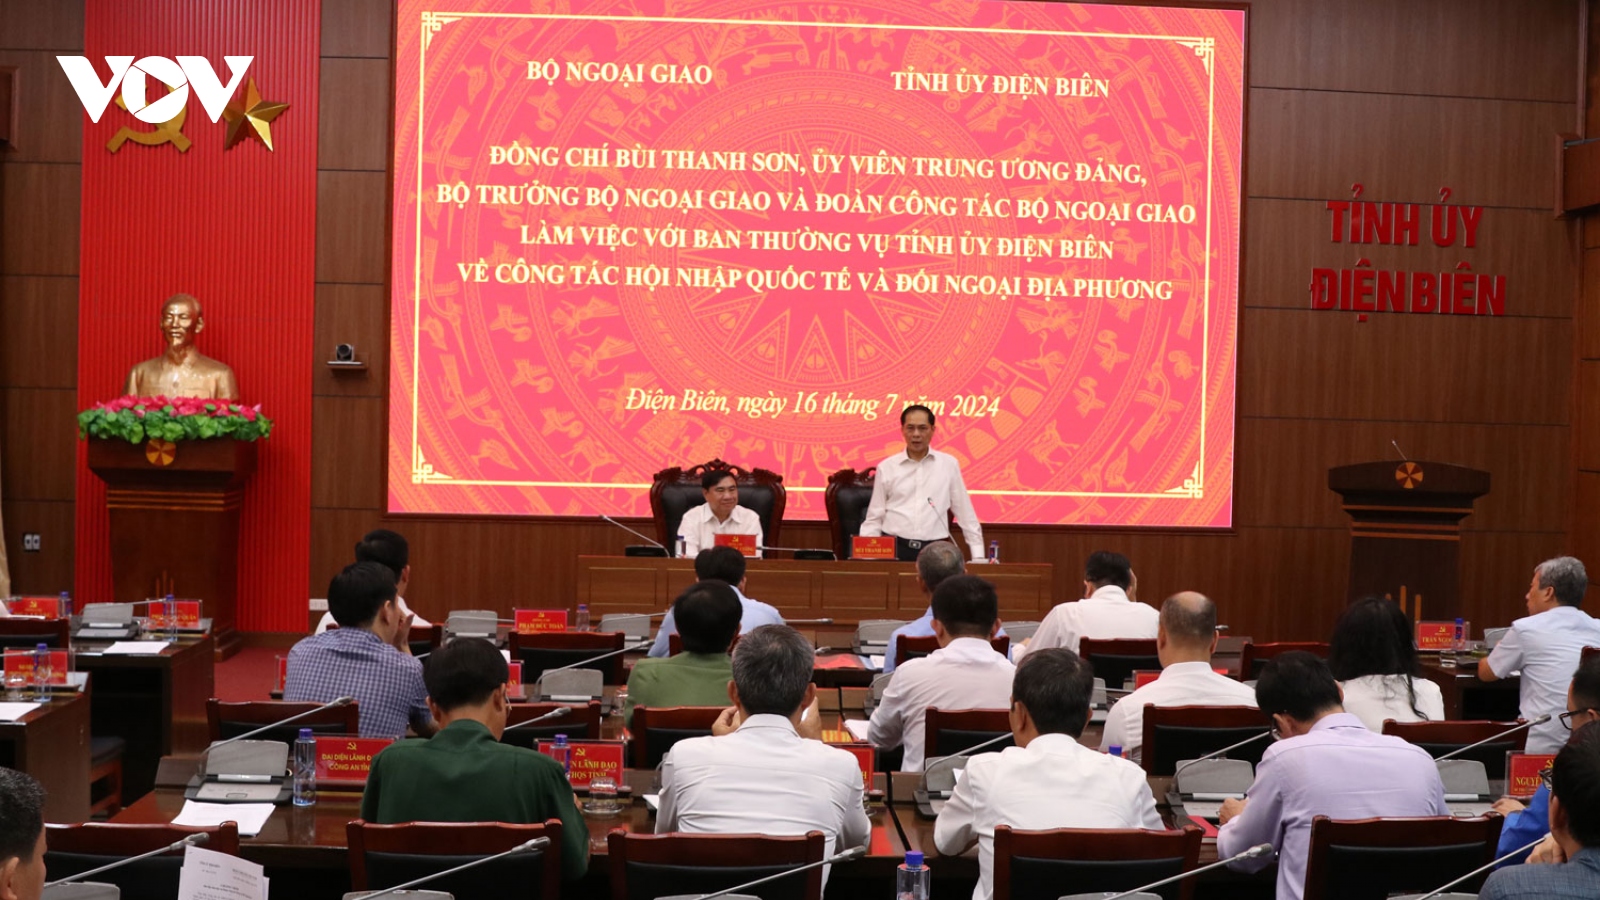 Bộ trưởng Bộ Ngoại giao Bùi Thanh Sơn làm việc tại tỉnh Điện Biên